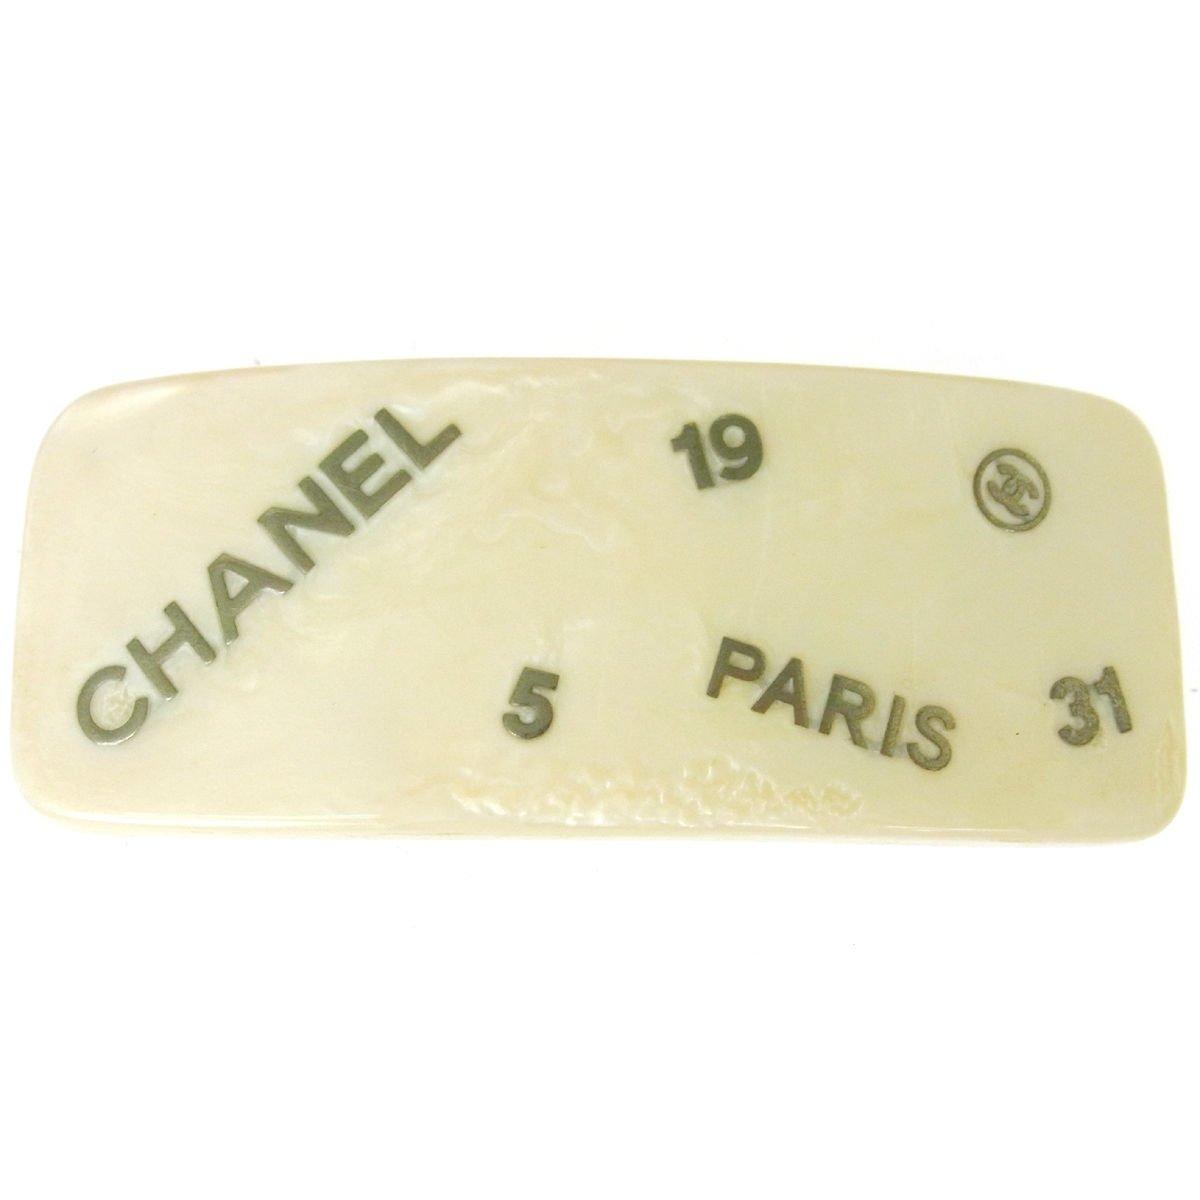 Barrettes Chanel : découvrez 5 modèles vintage les plus chers récemment vendus sur eBay ! 